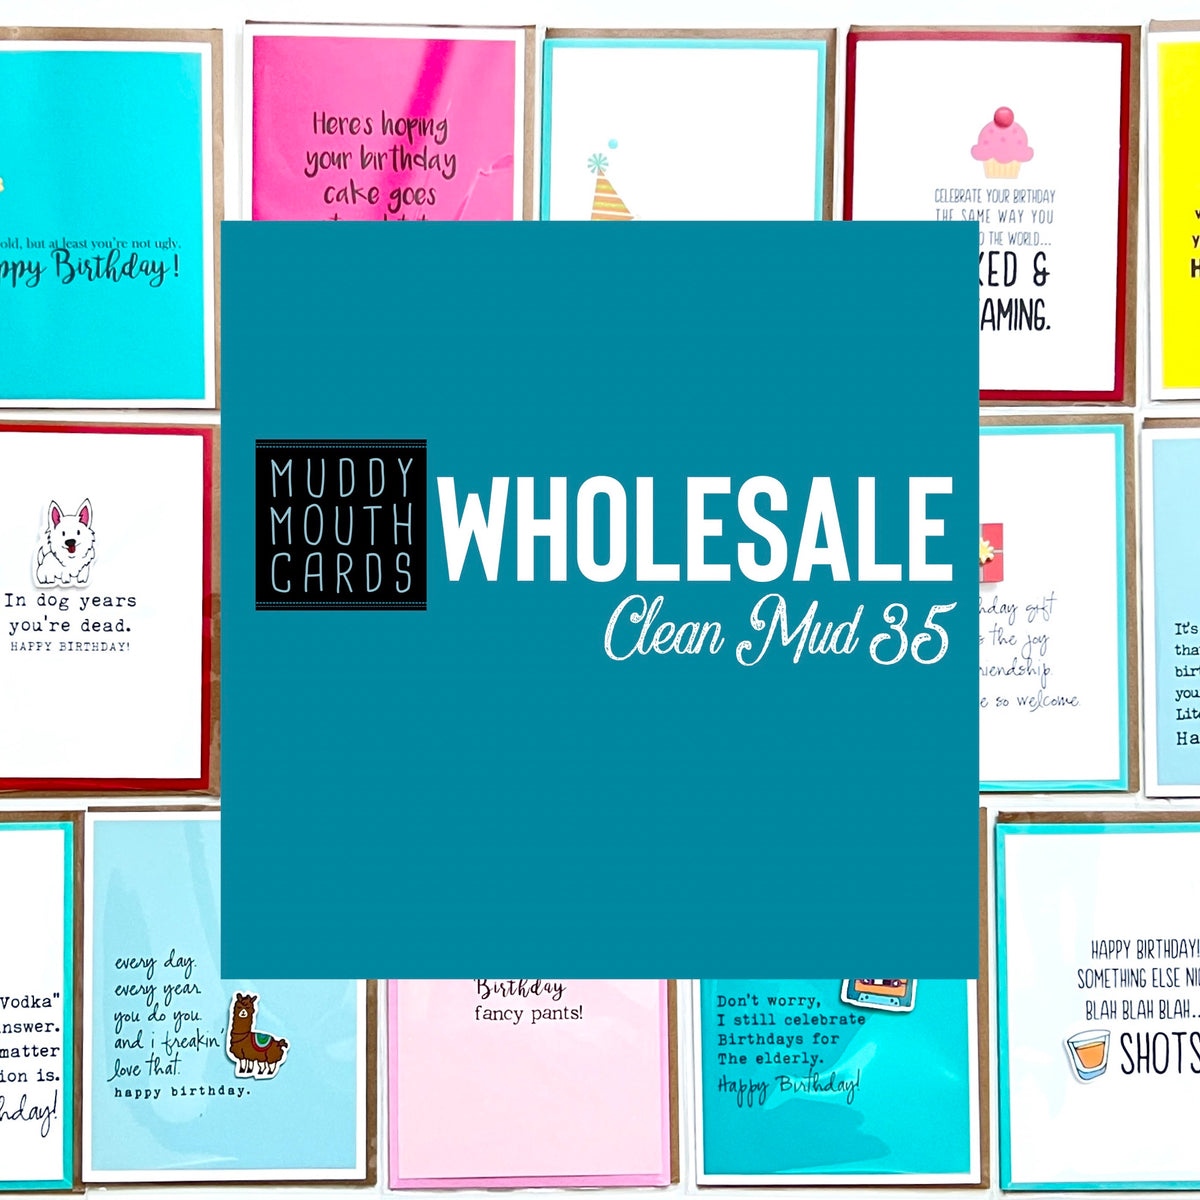 Wholesale— Clean Mud (no profanity) Best Seller 35